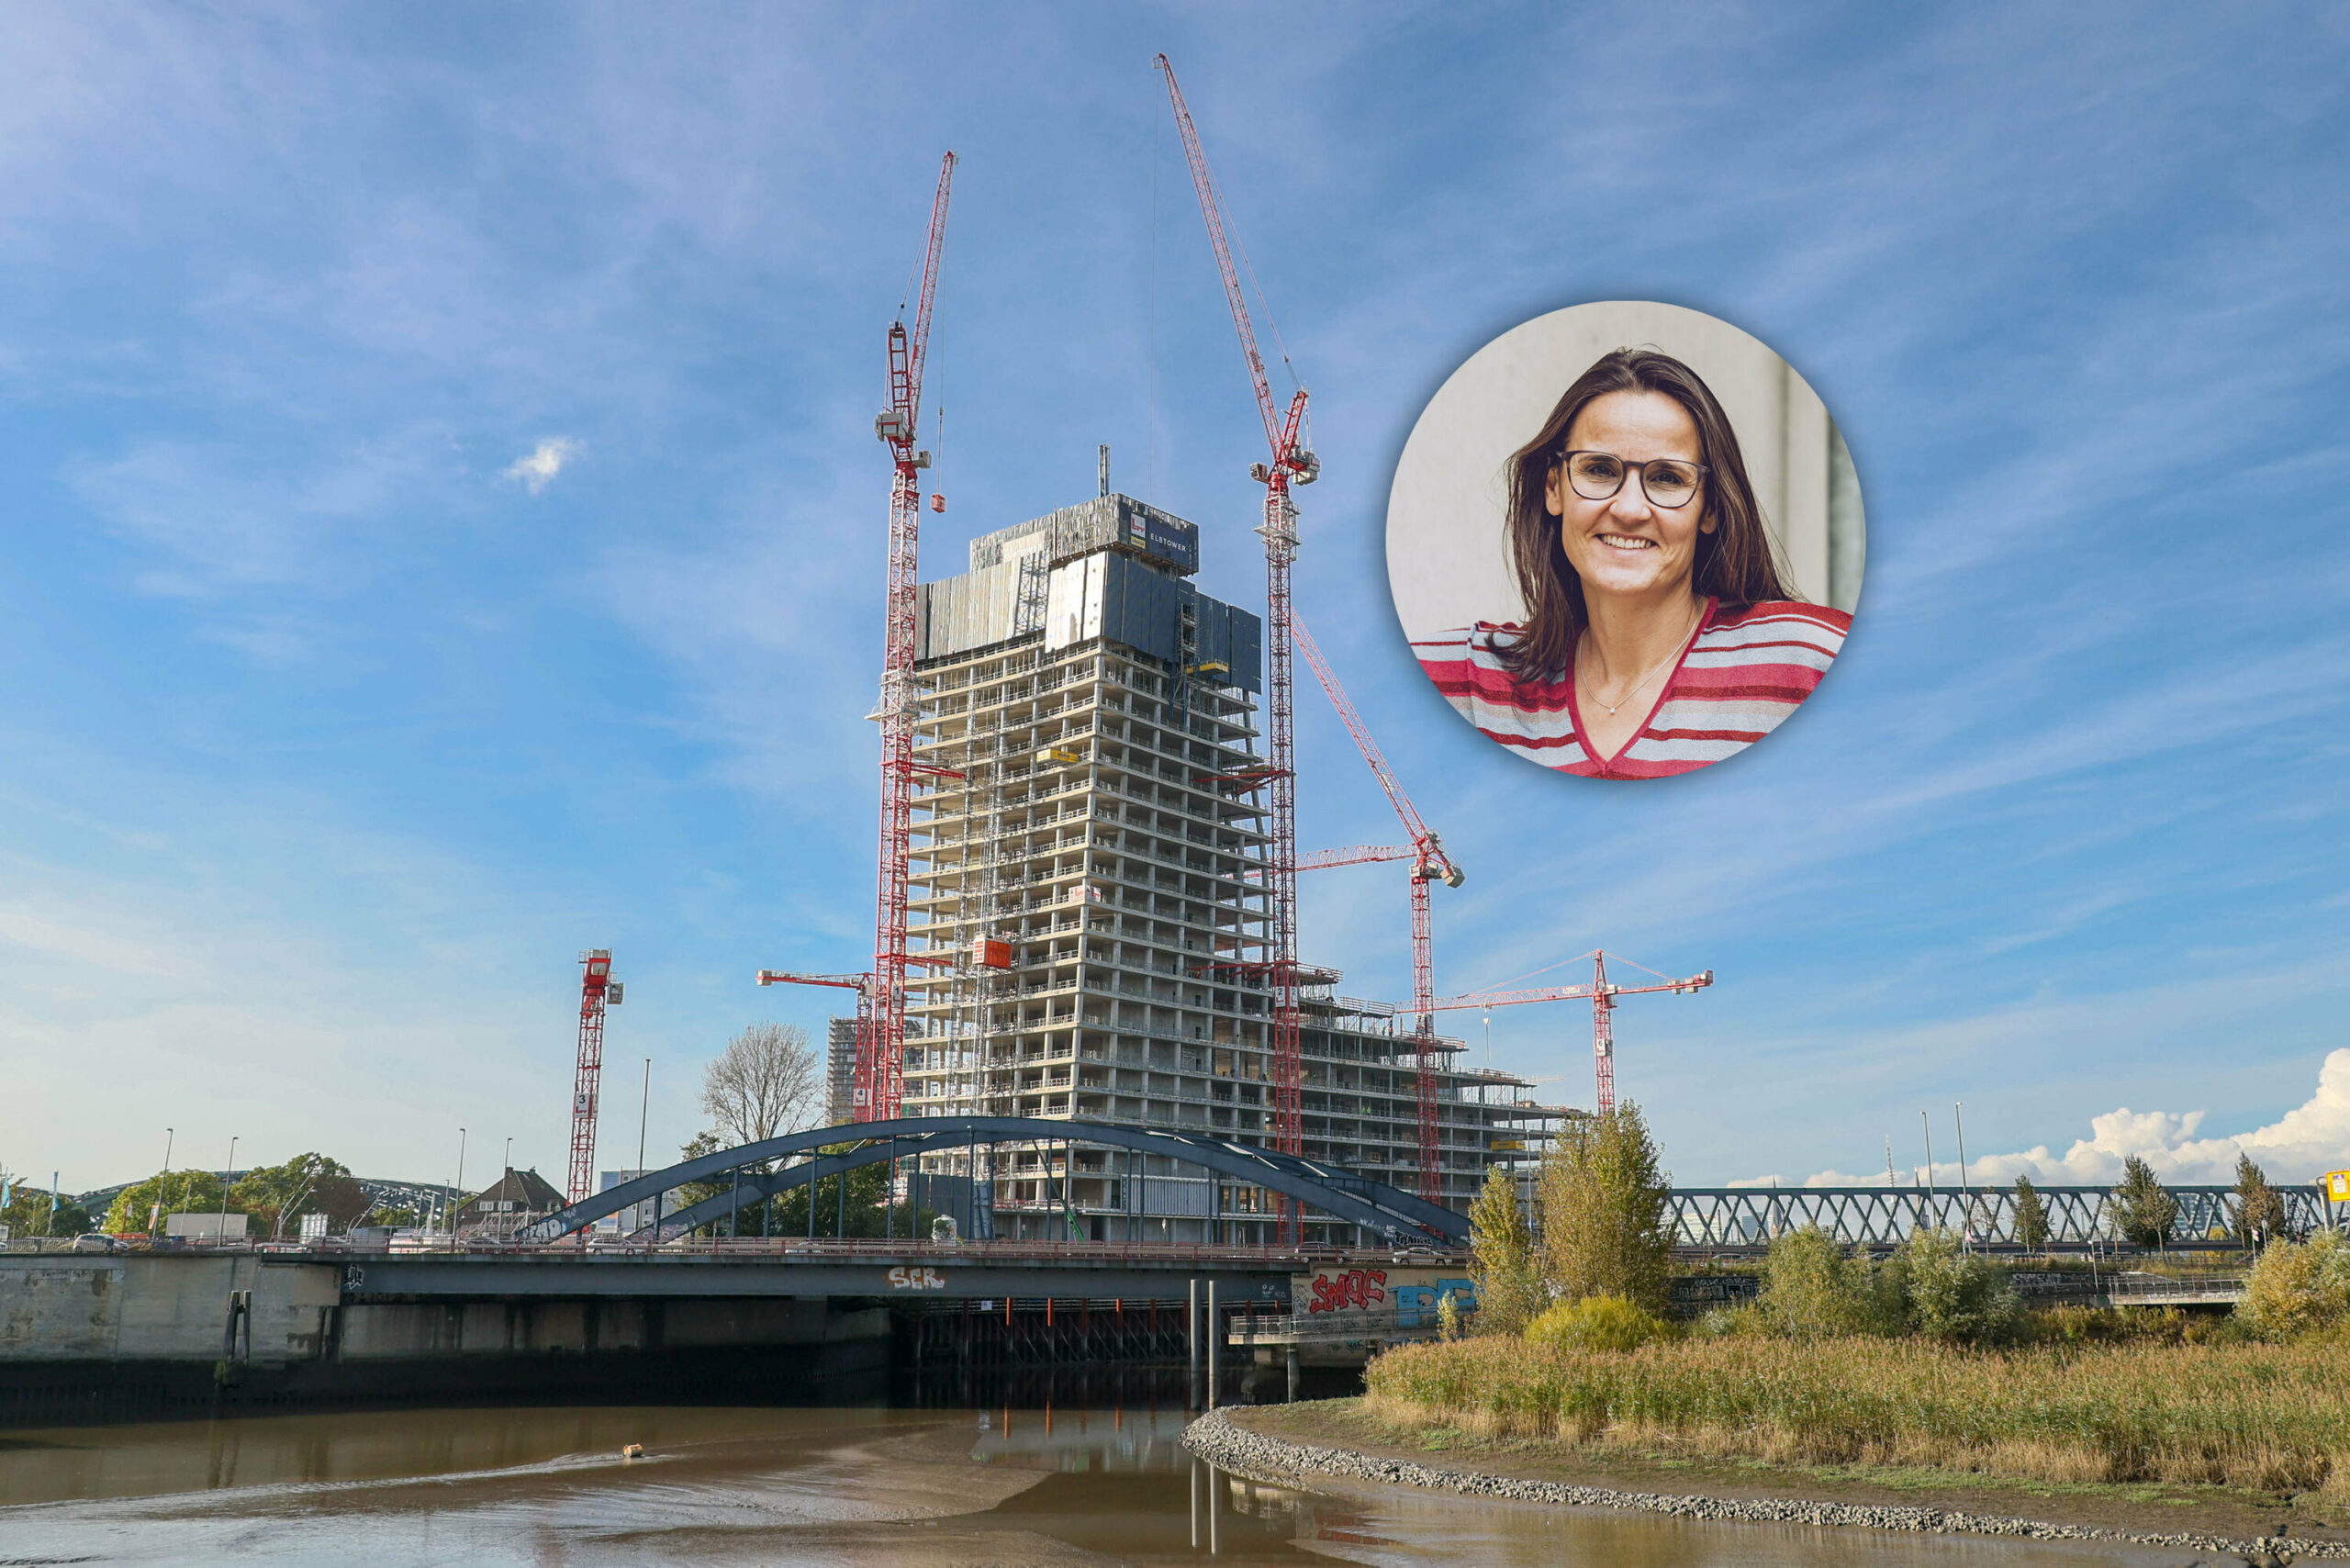 Die Bauarbeiten am Elbtower in der HafenCity wurden im Oktober eingestellt. Bausenatorin Karen Pein (SPD) ist trotzdem zuversichtlich, dass der Turm fertig wird.